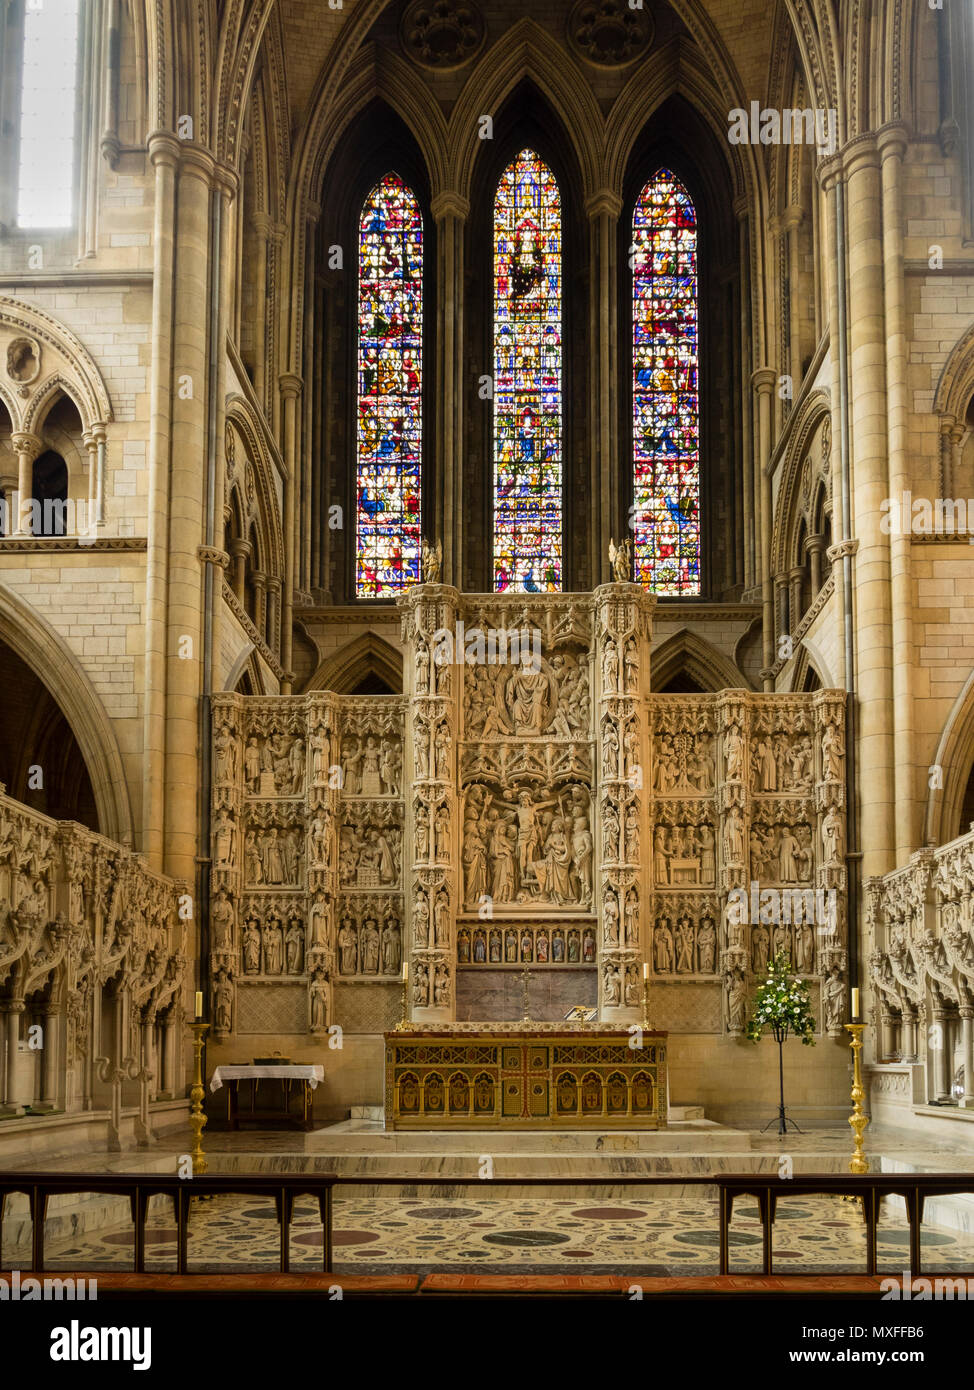 Altar und kunstvoll geschnitzten Retabel unterhalb der Glasfenster der Viktorianischen Kathedrale von Truro, Cornwall, Großbritannien Stockfoto